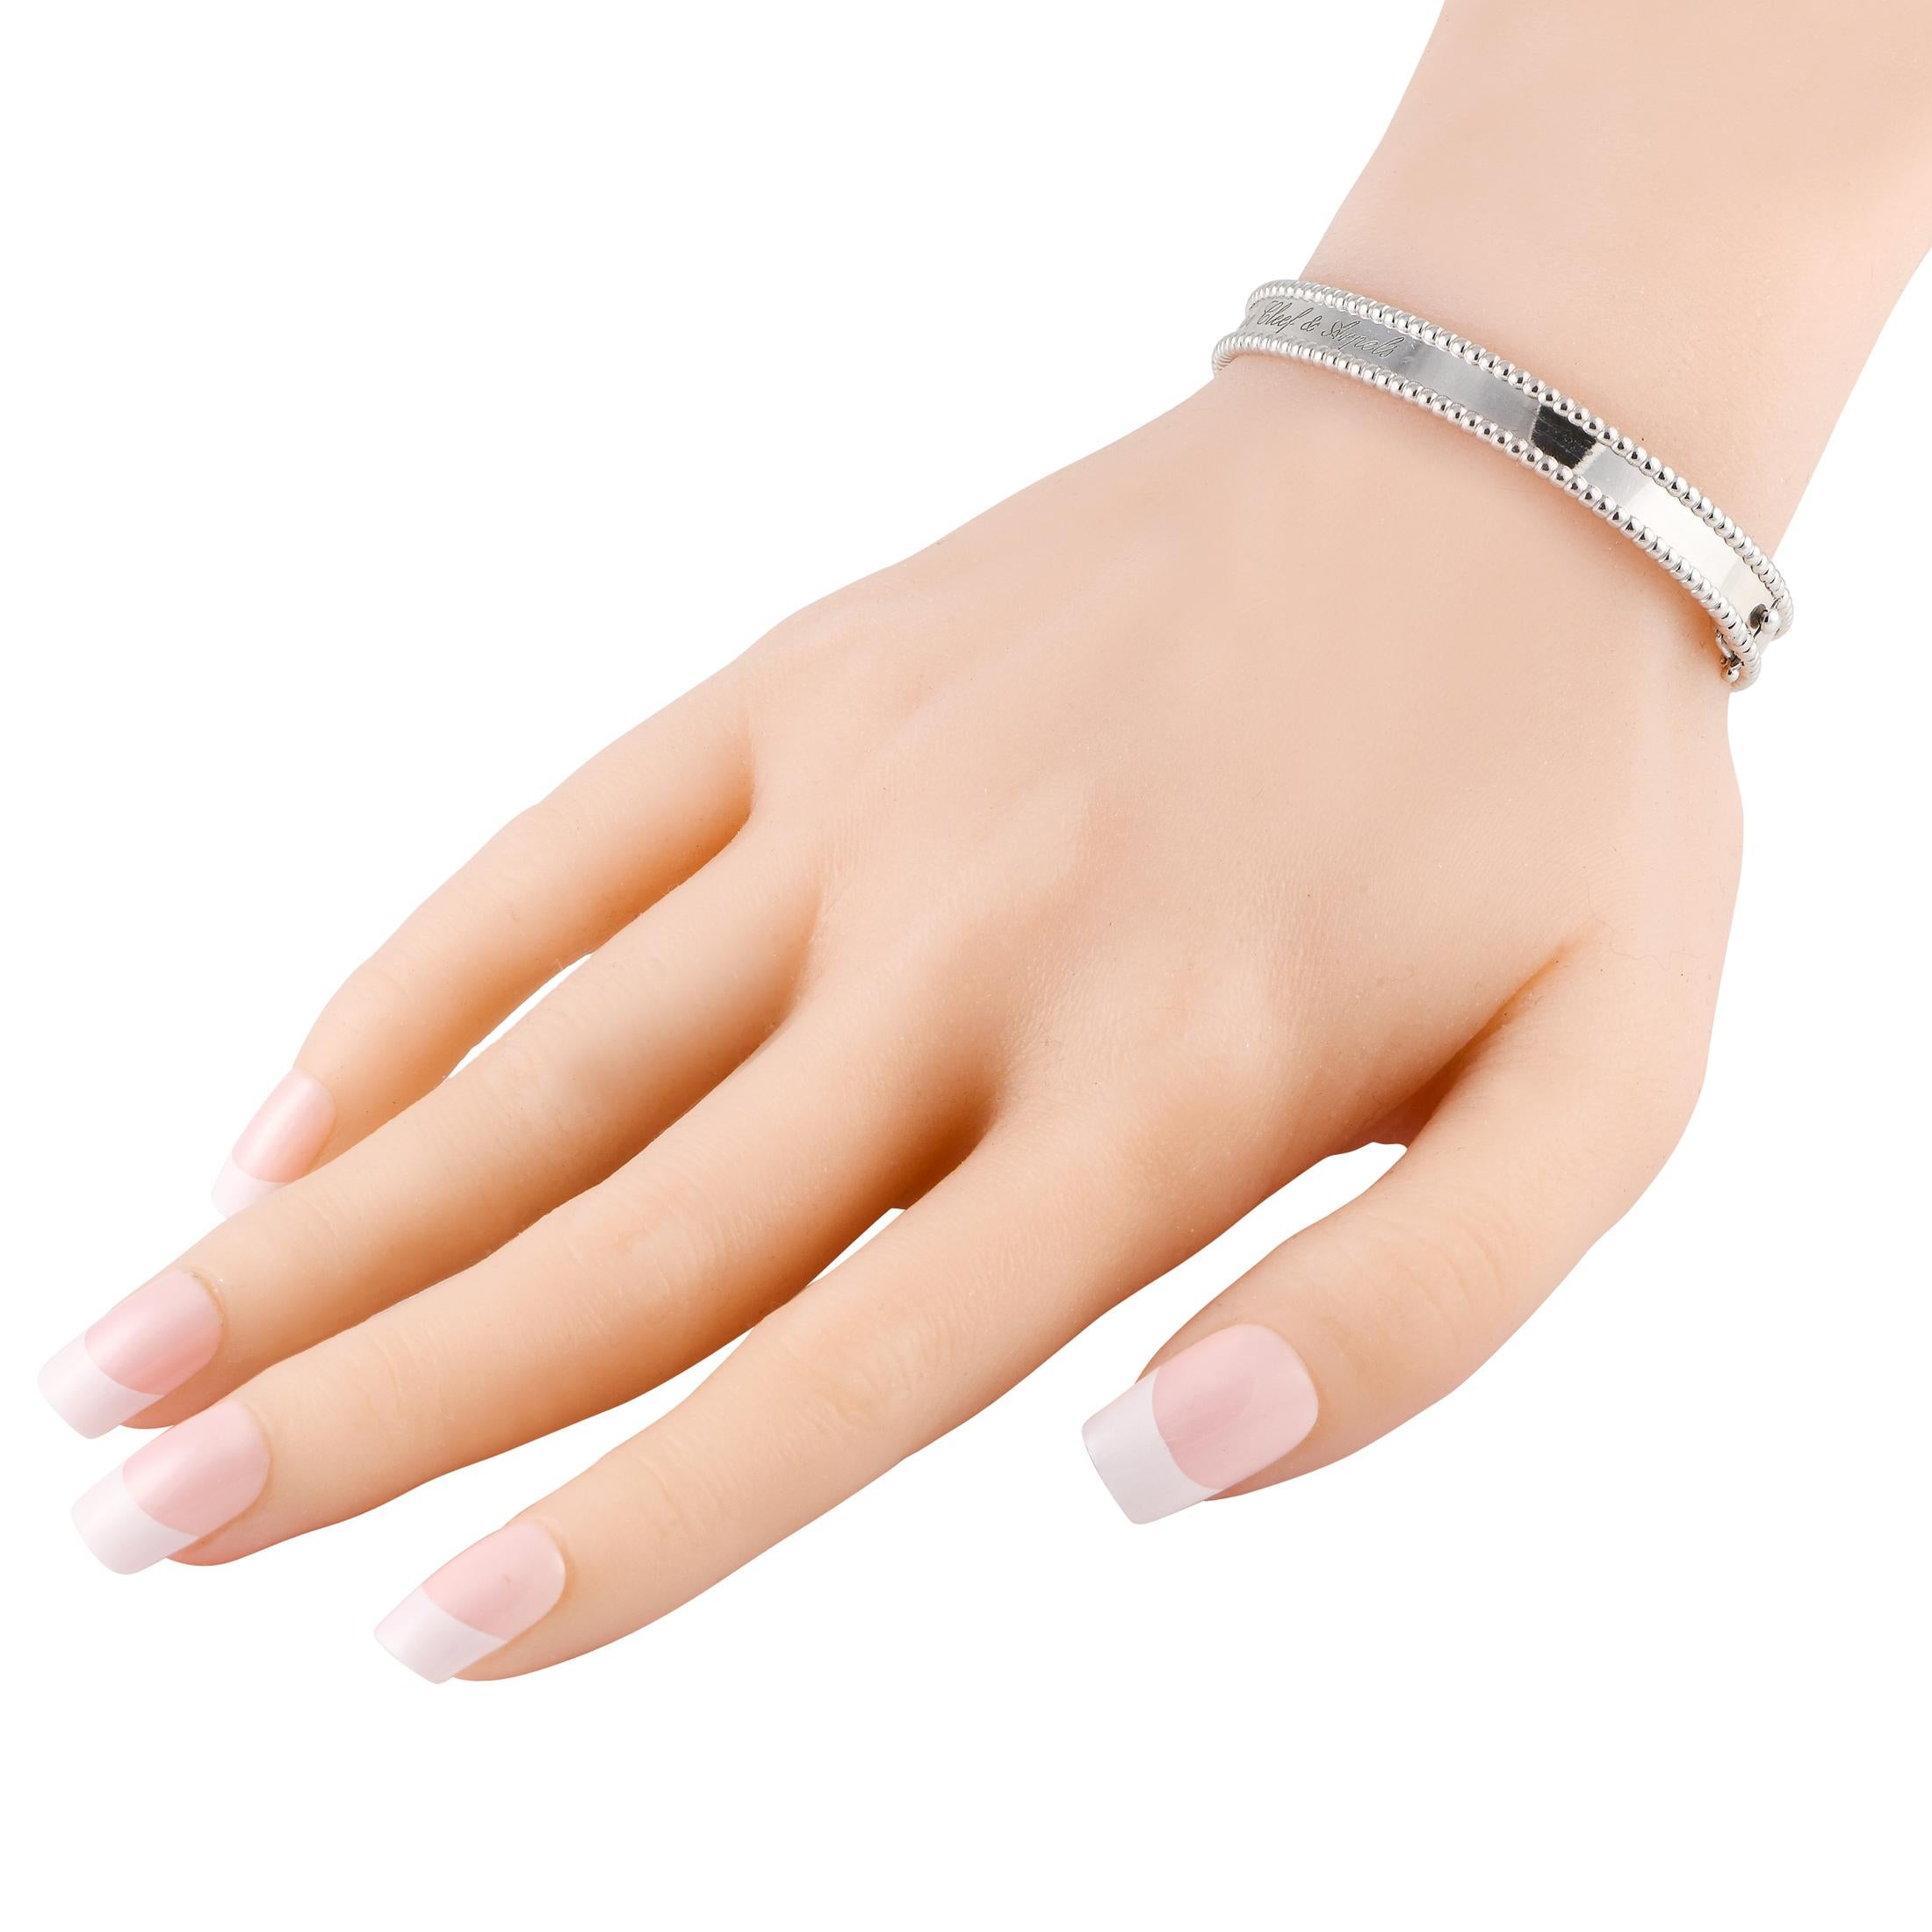 Ce bracelet Perlee de Van Cleef & Arpels, à la fois élégant et sophistiqué, est orné d'un perlage complexe. L'or blanc 18 carats scintillant lui confère une qualité lumineuse, tandis que la signature de la marque gravée sur le côté apporte une